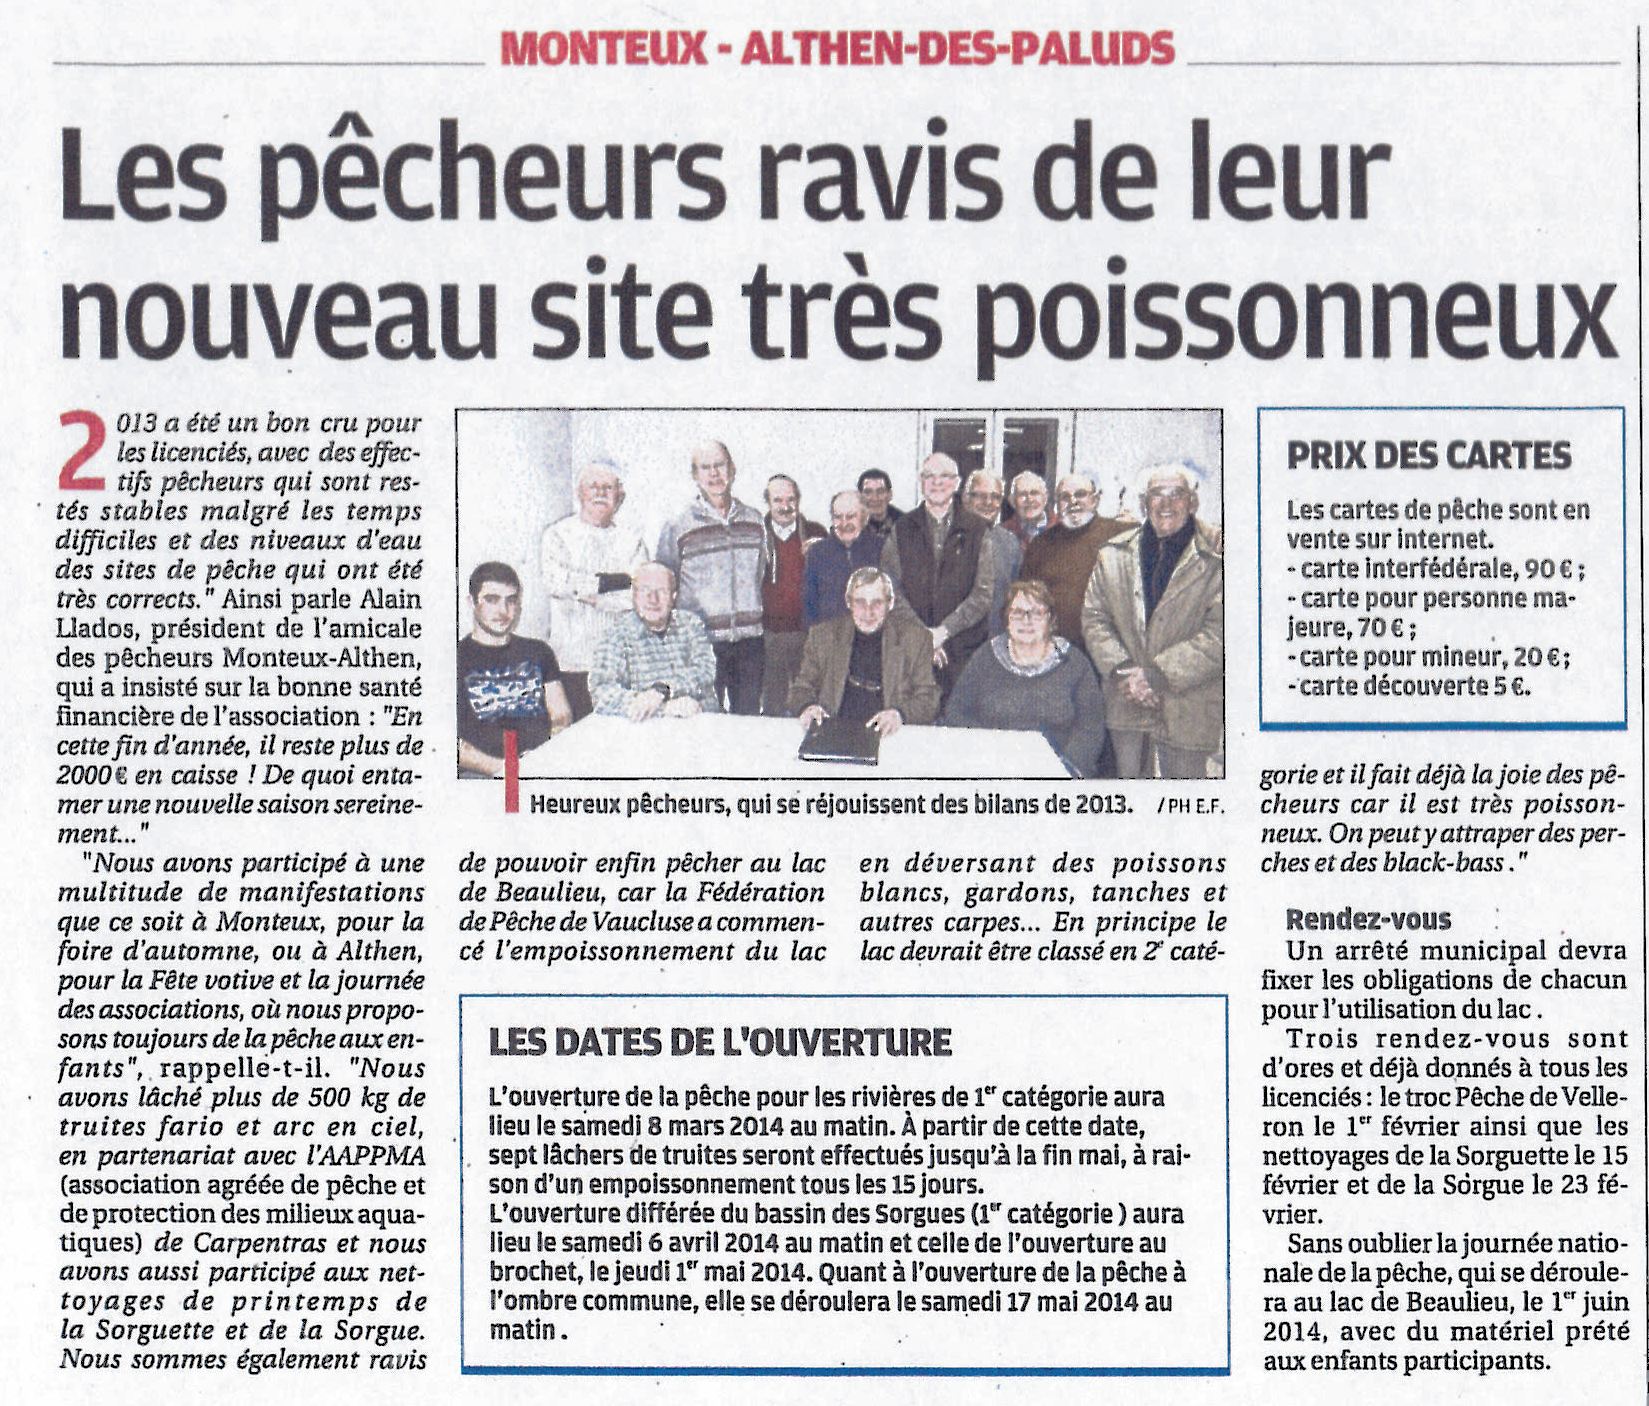 Article paru dans la Provence le 17 décembre 2013